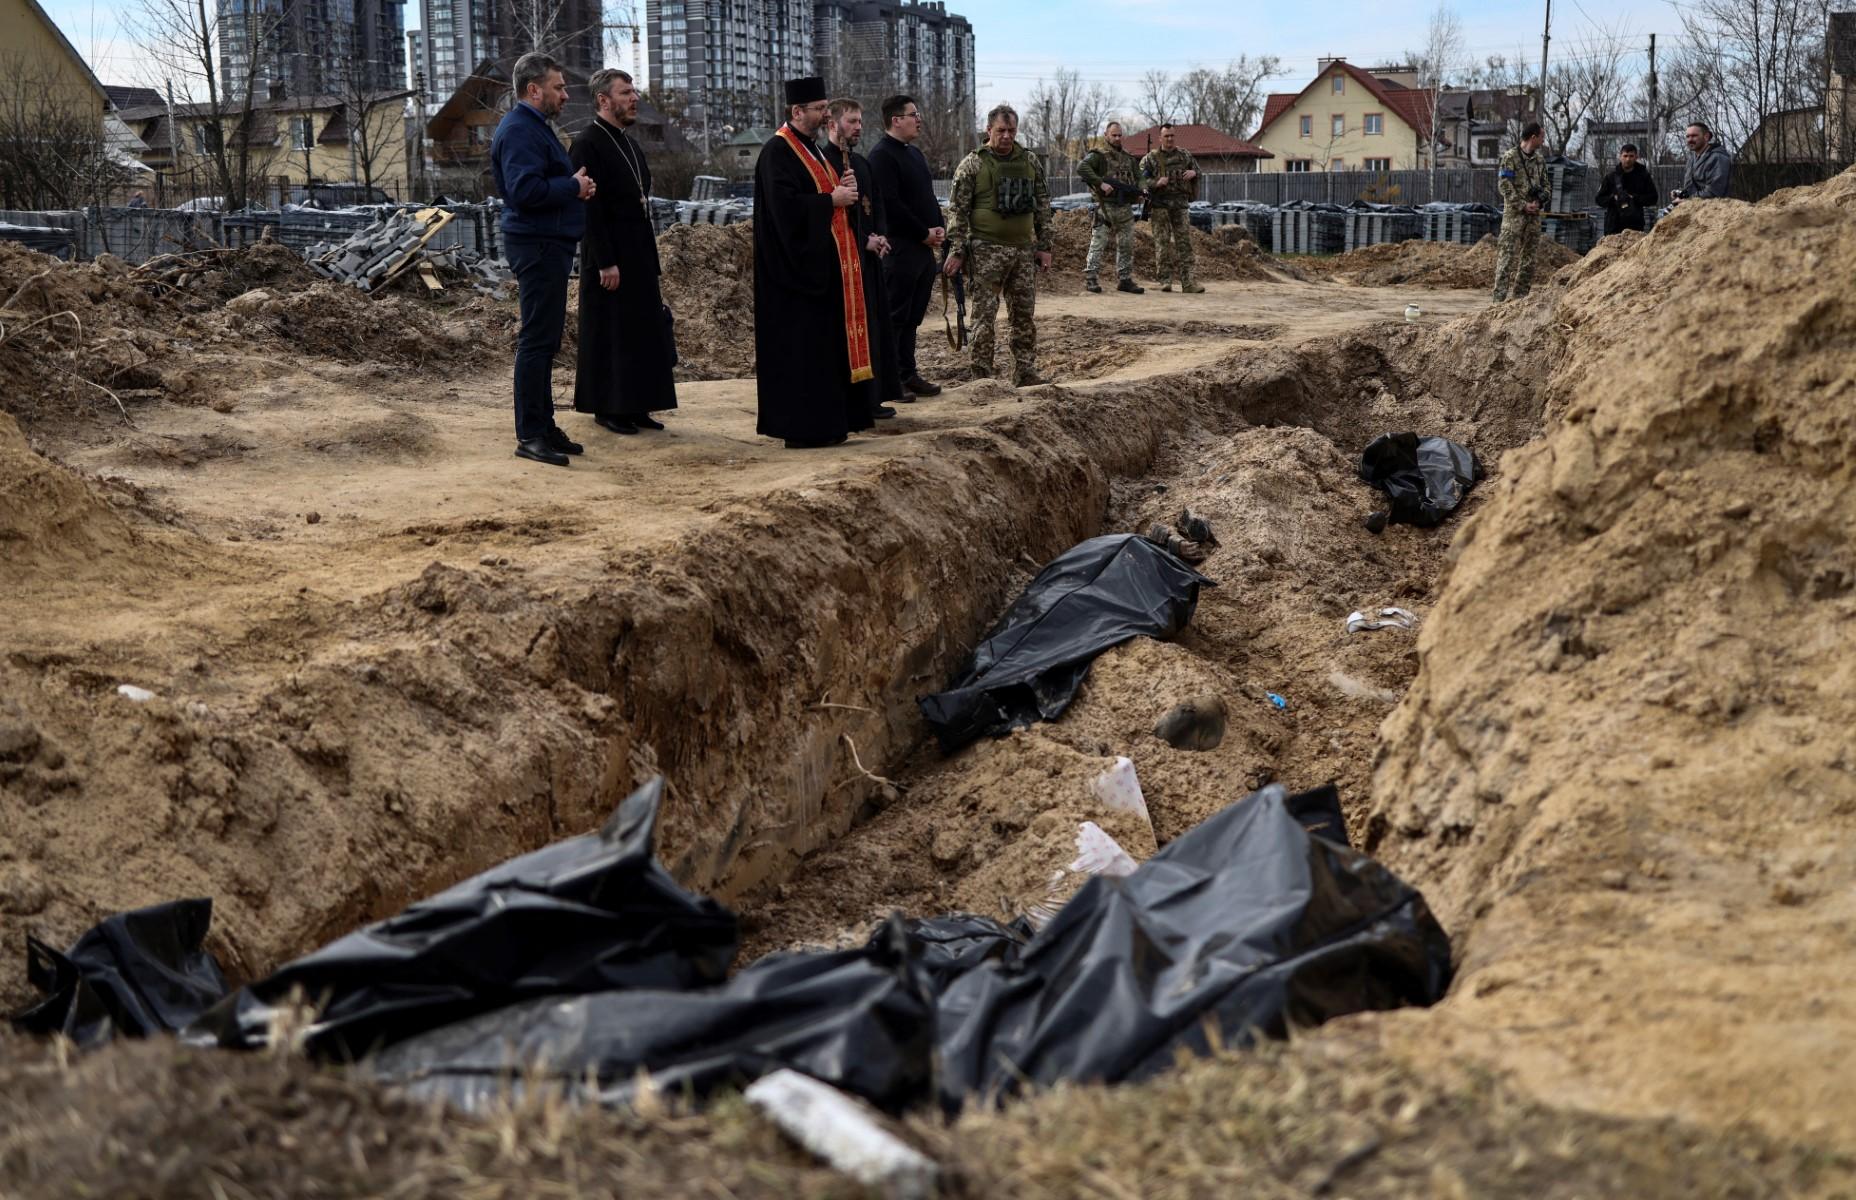 duchowni i żołnierze modlą się nad zbiorową mogiłą, w której leżą worki z ciałami zamordowanych mieszkańców Buczy